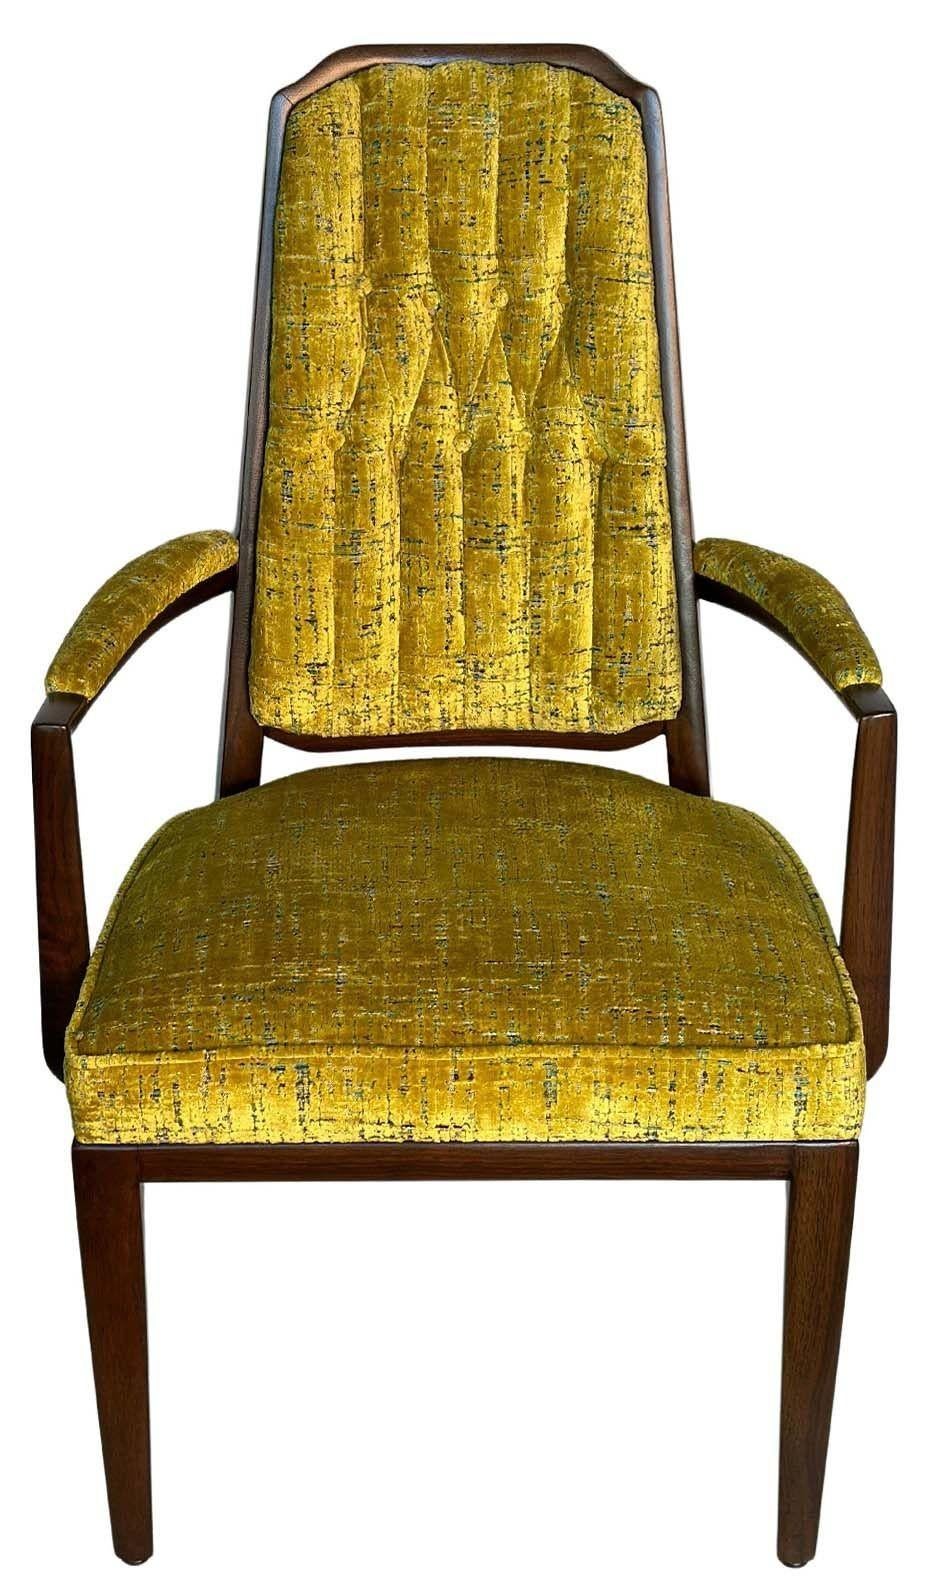 Vintage-Set mit zehn Stühlen von Monteverdi-Young, hergestellt in den USA, ca. 1950er Jahre. Das Set besteht aus acht Beistellstühlen und zwei Sesseln, die jeweils mit einem einzigartigen weichem, senfgrünen Stoff gepolstert und mit einem neuen